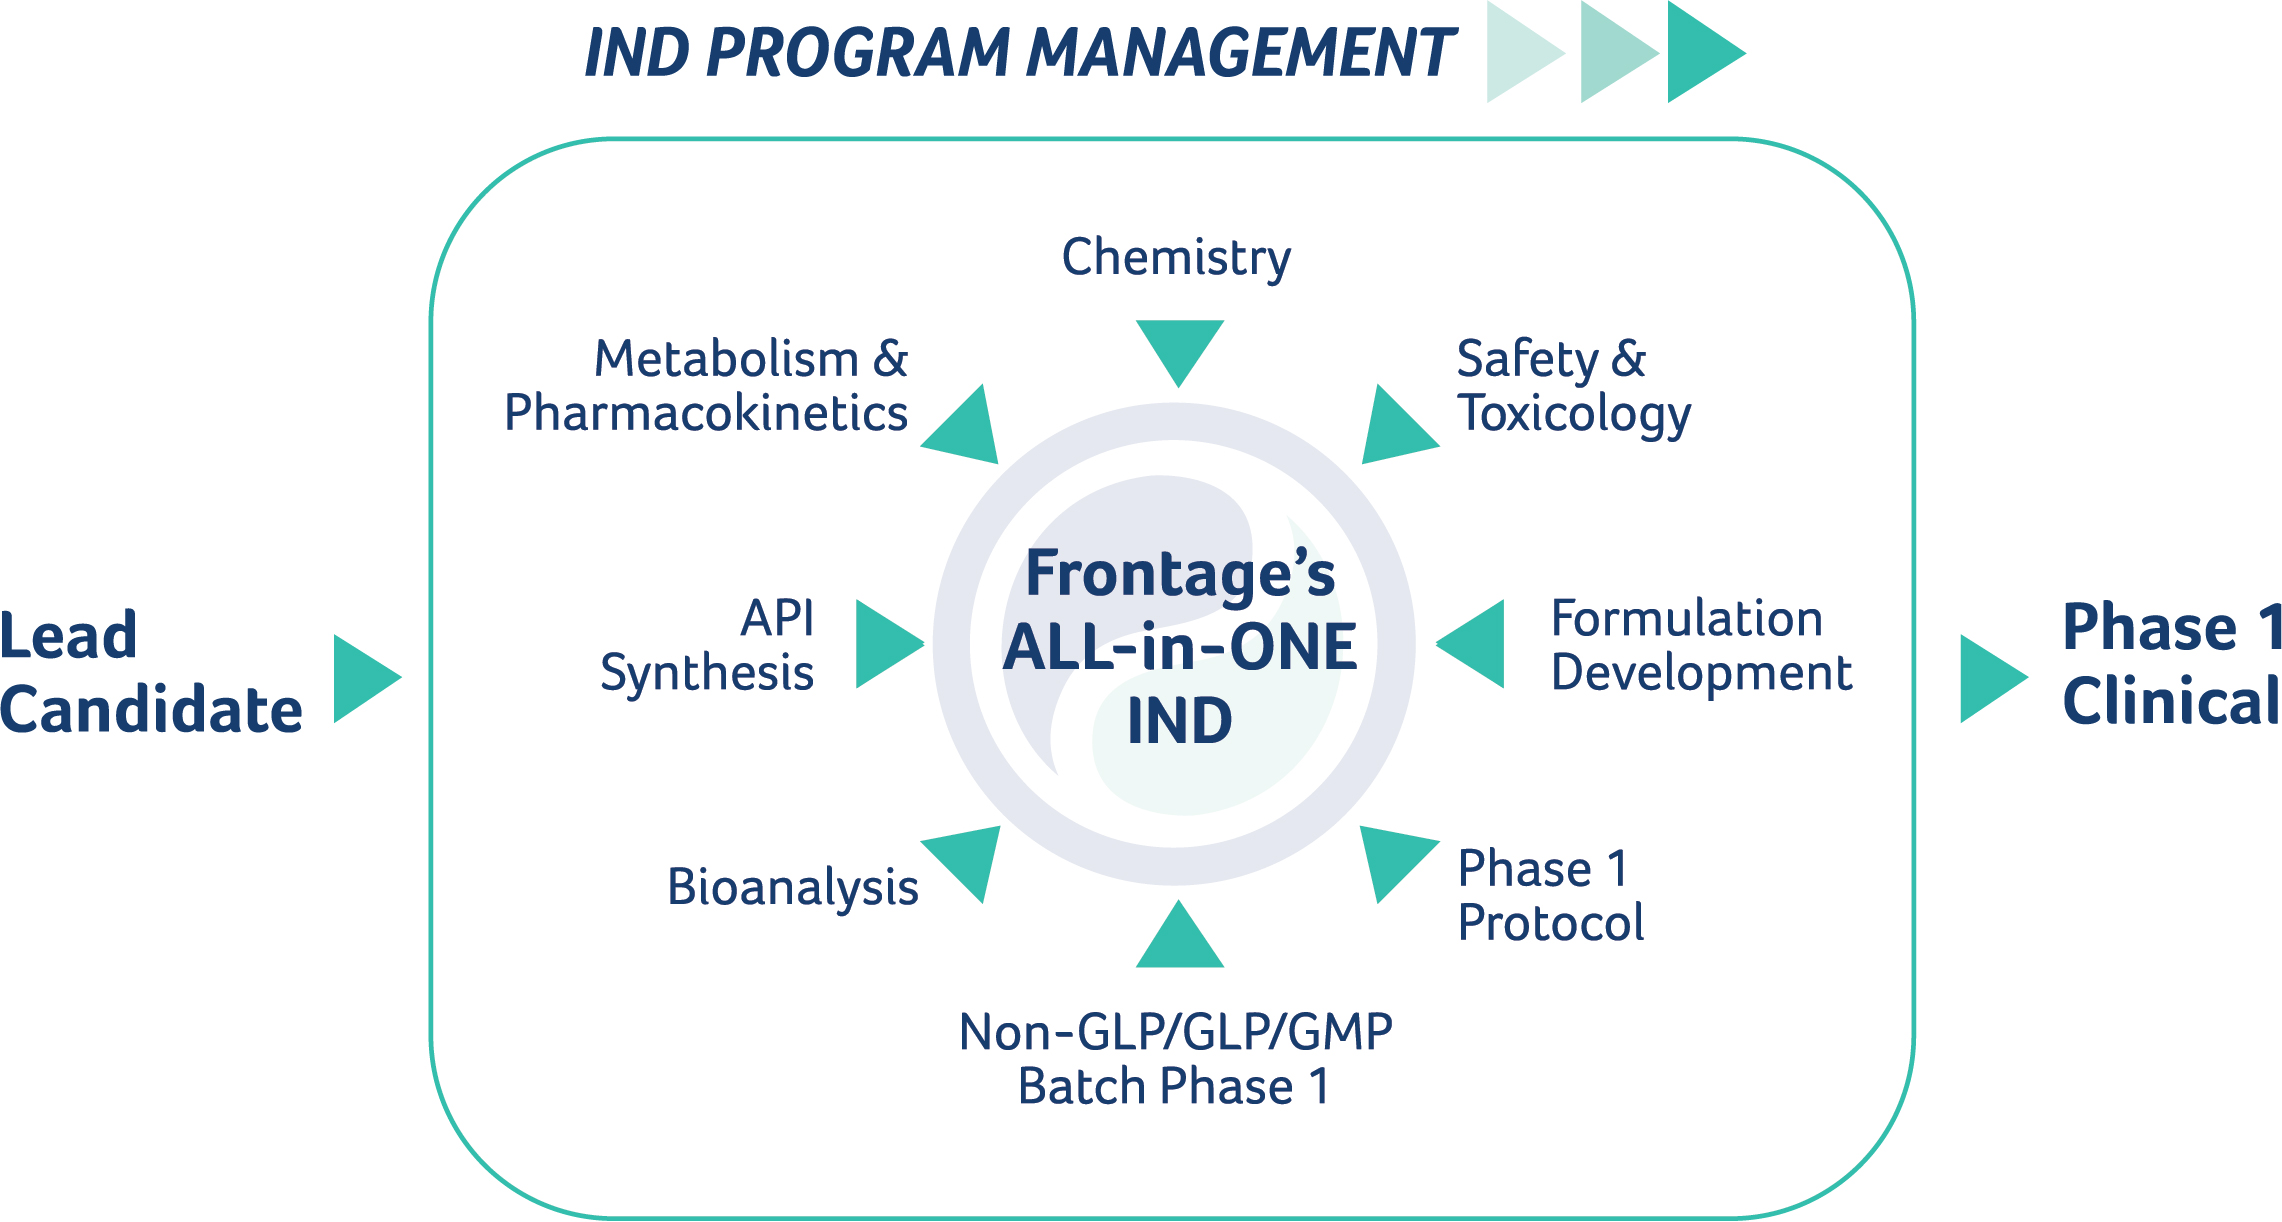 IND Program Management 1 - IND Enabling Services